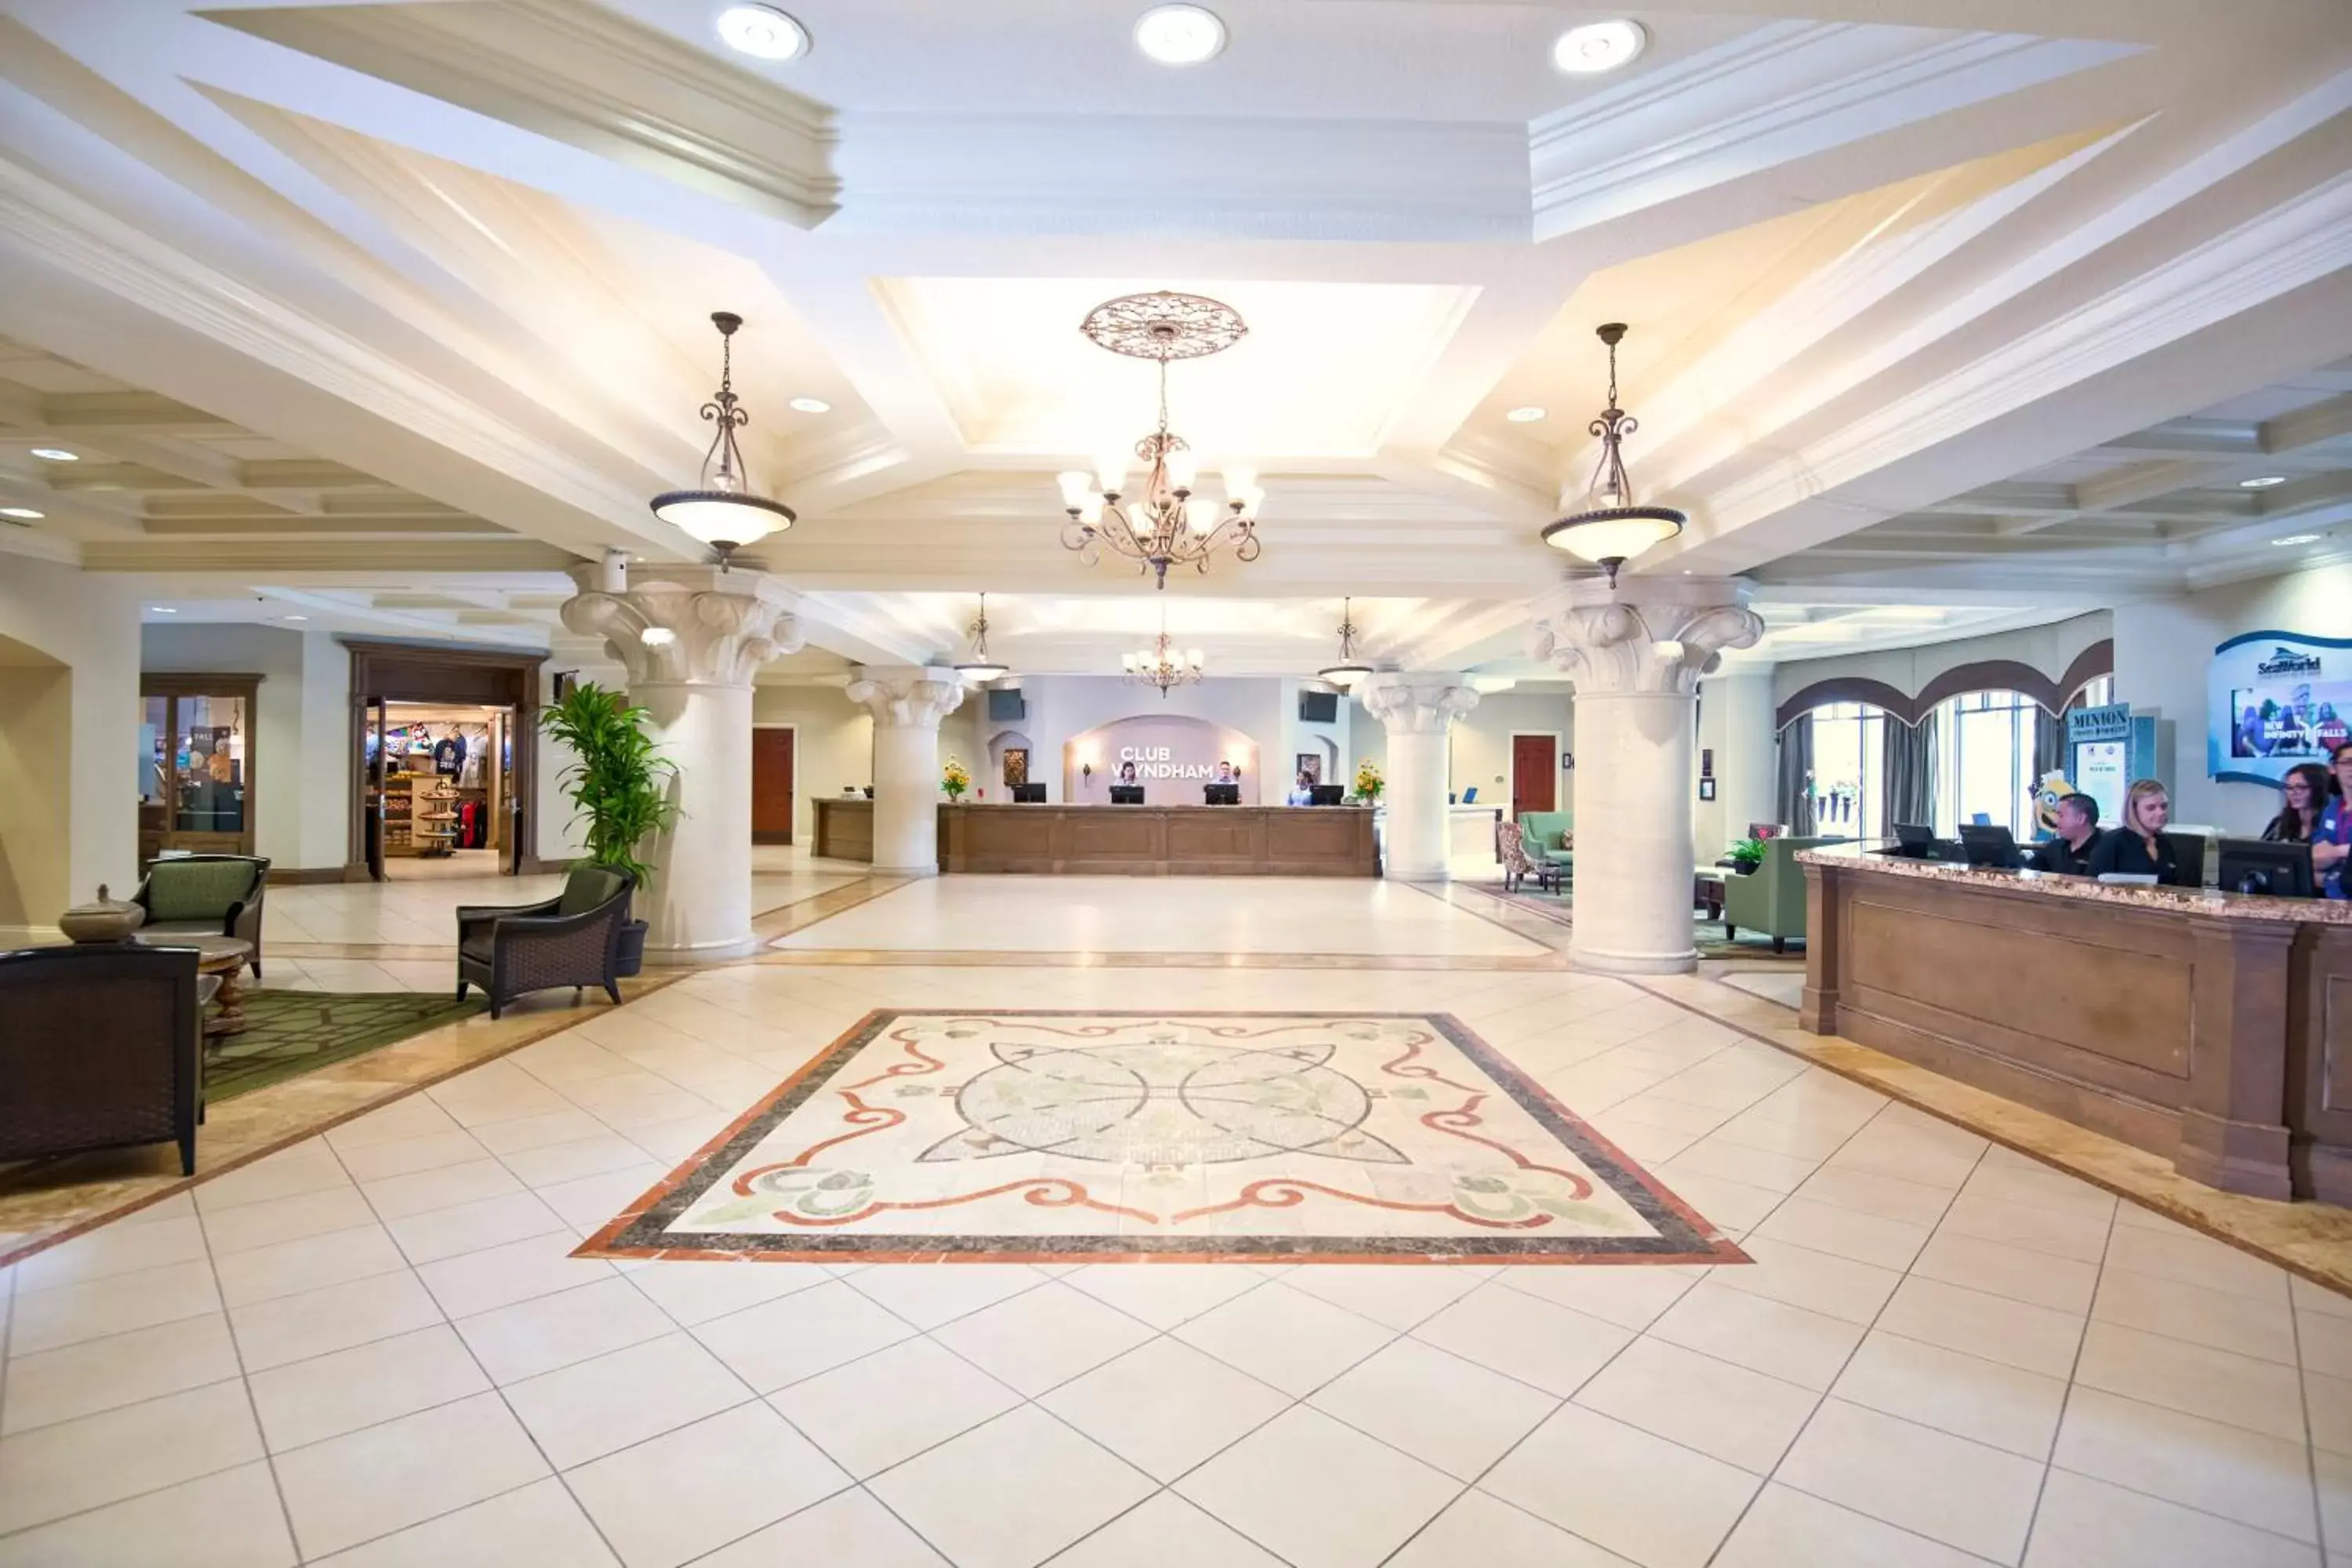 Lobby or reception in Club Wyndham Bonnet Creek